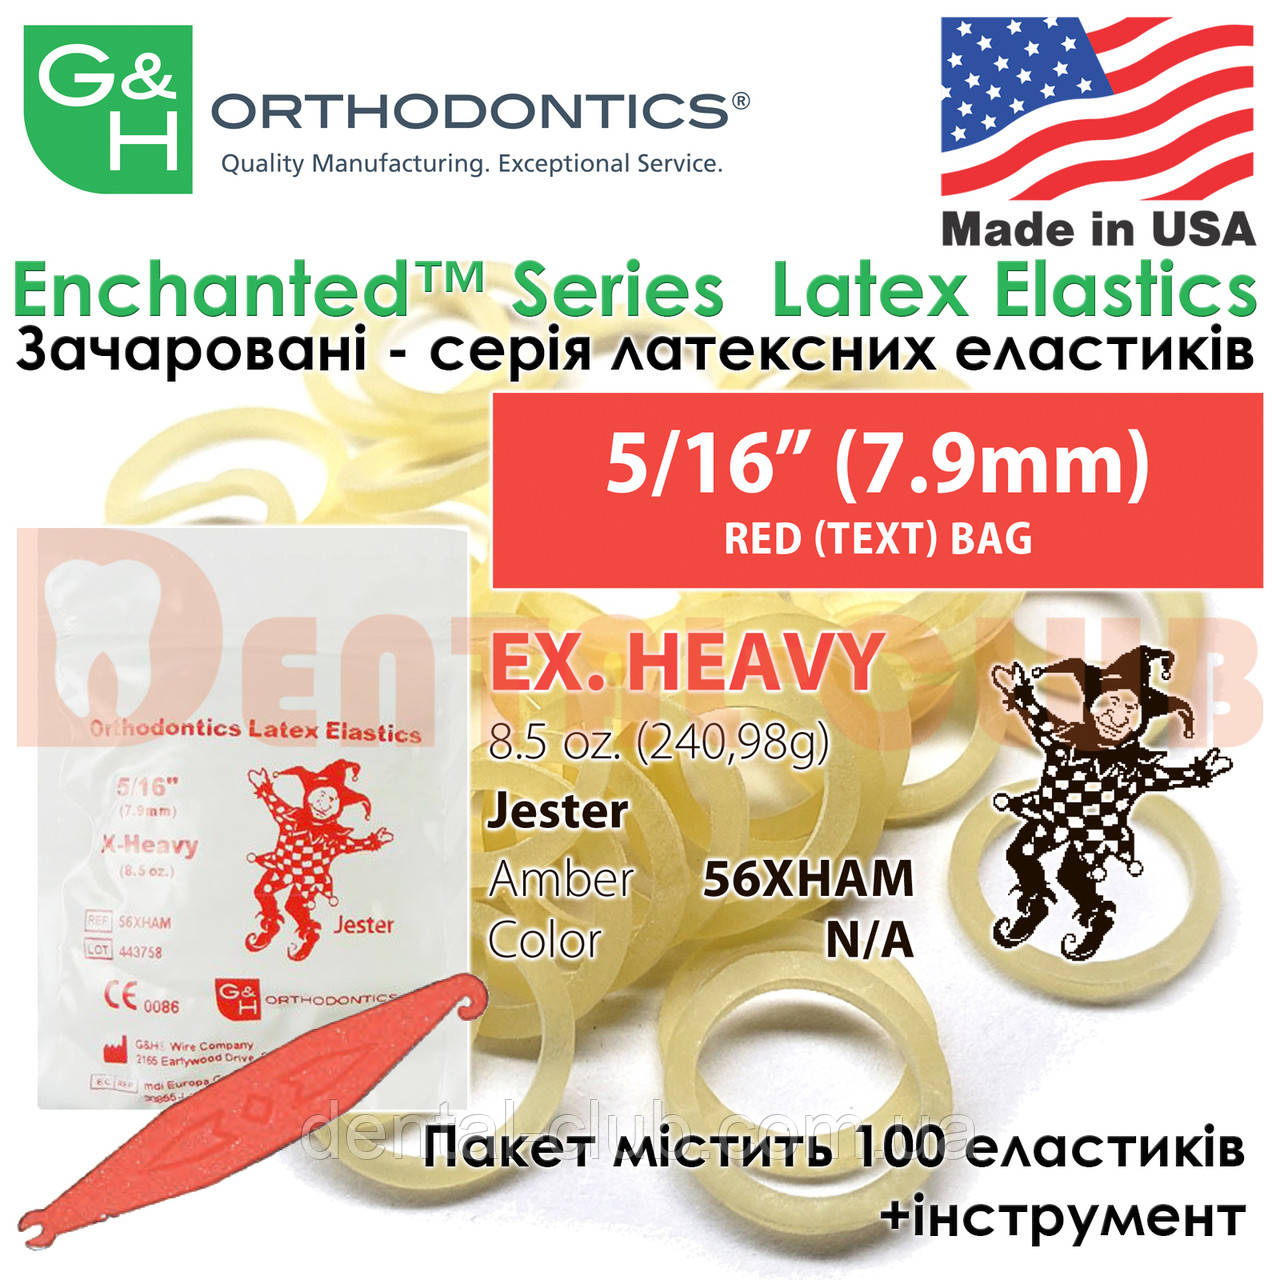 Еластичні кільця латексні (міжщелепні тяги) G&H - Enchanted Latex Elastics "Чарівна лісова тема" ex. heavy (екстра тяжкий натяг) - 8.5 oz. (240,98 g), 5/16" (7.9 mm) RED (TEXT) BAG